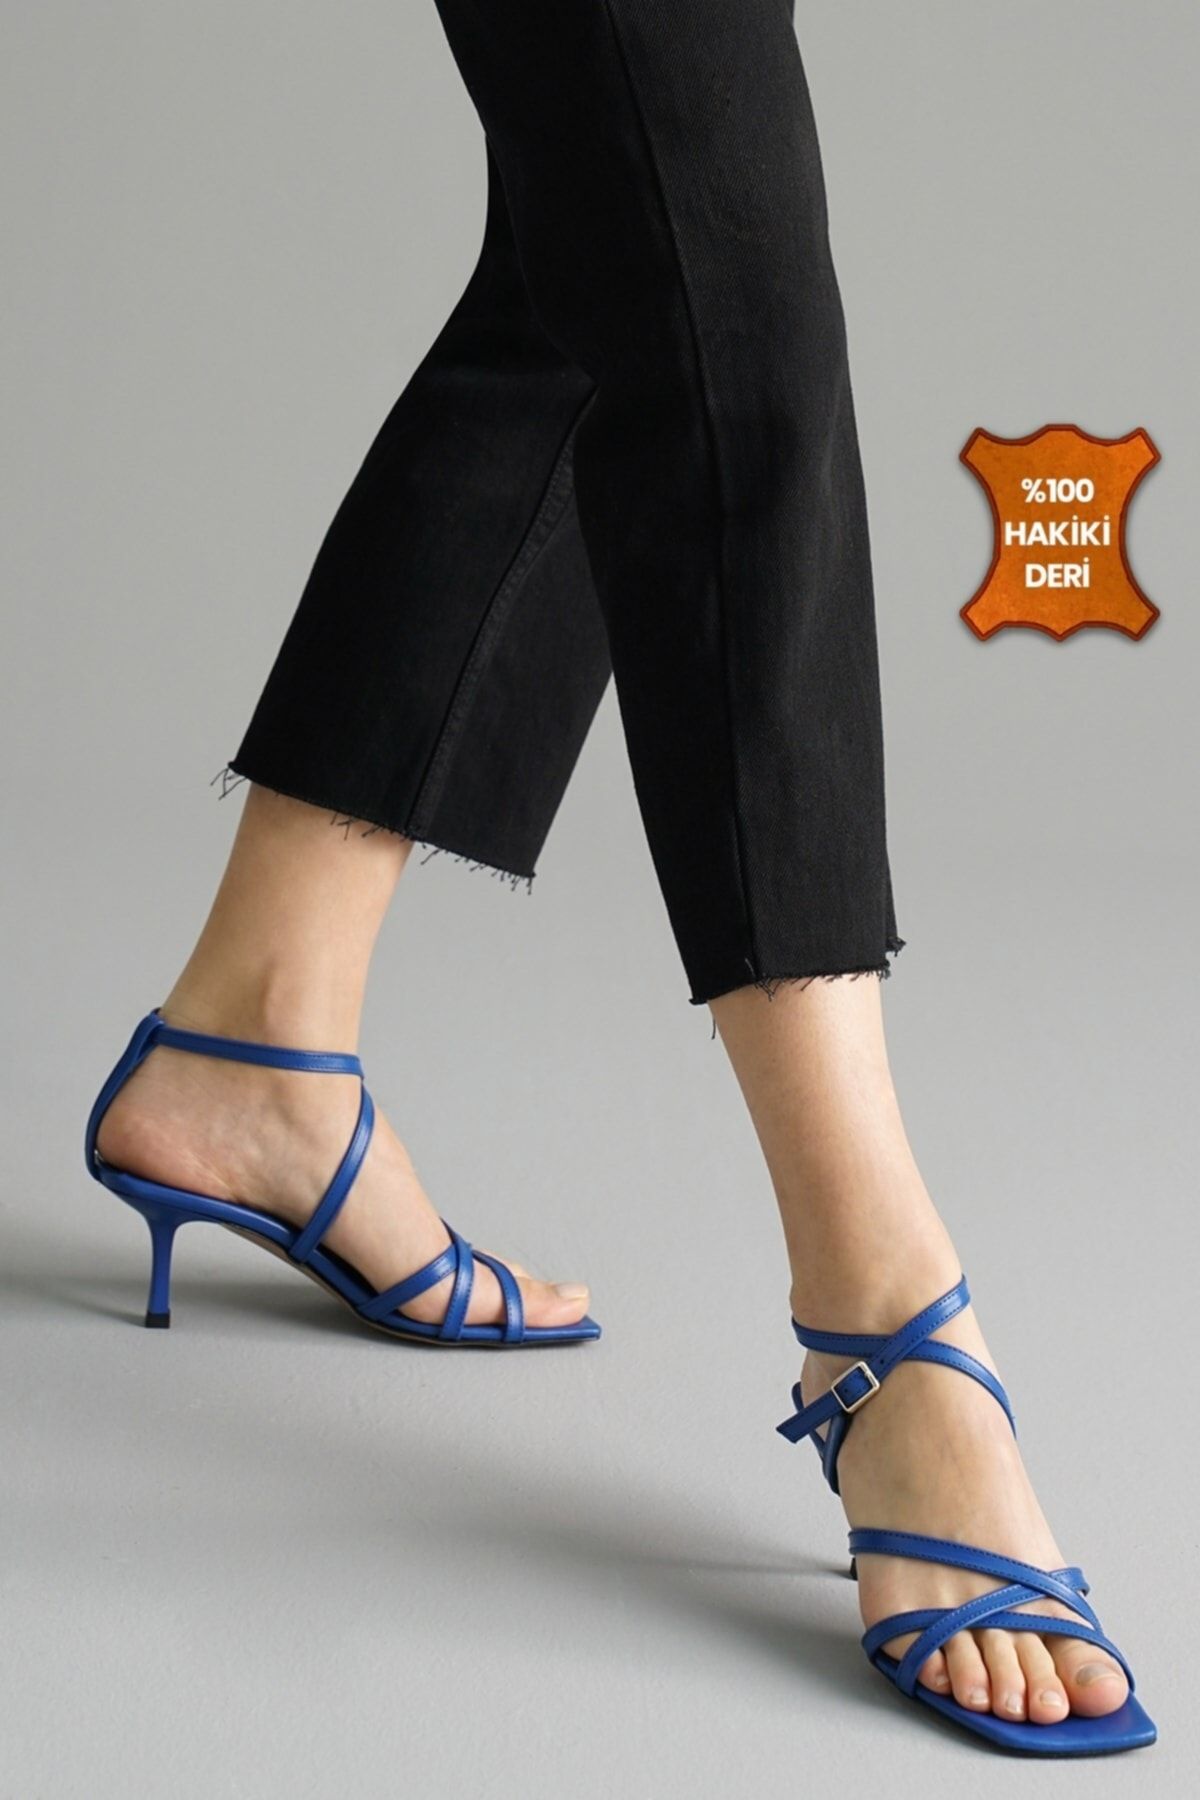 Mio Gusto Valeria Hakiki Deri Saks Mavi Renk Kadın Sandalet Topuklu Ayakkabı